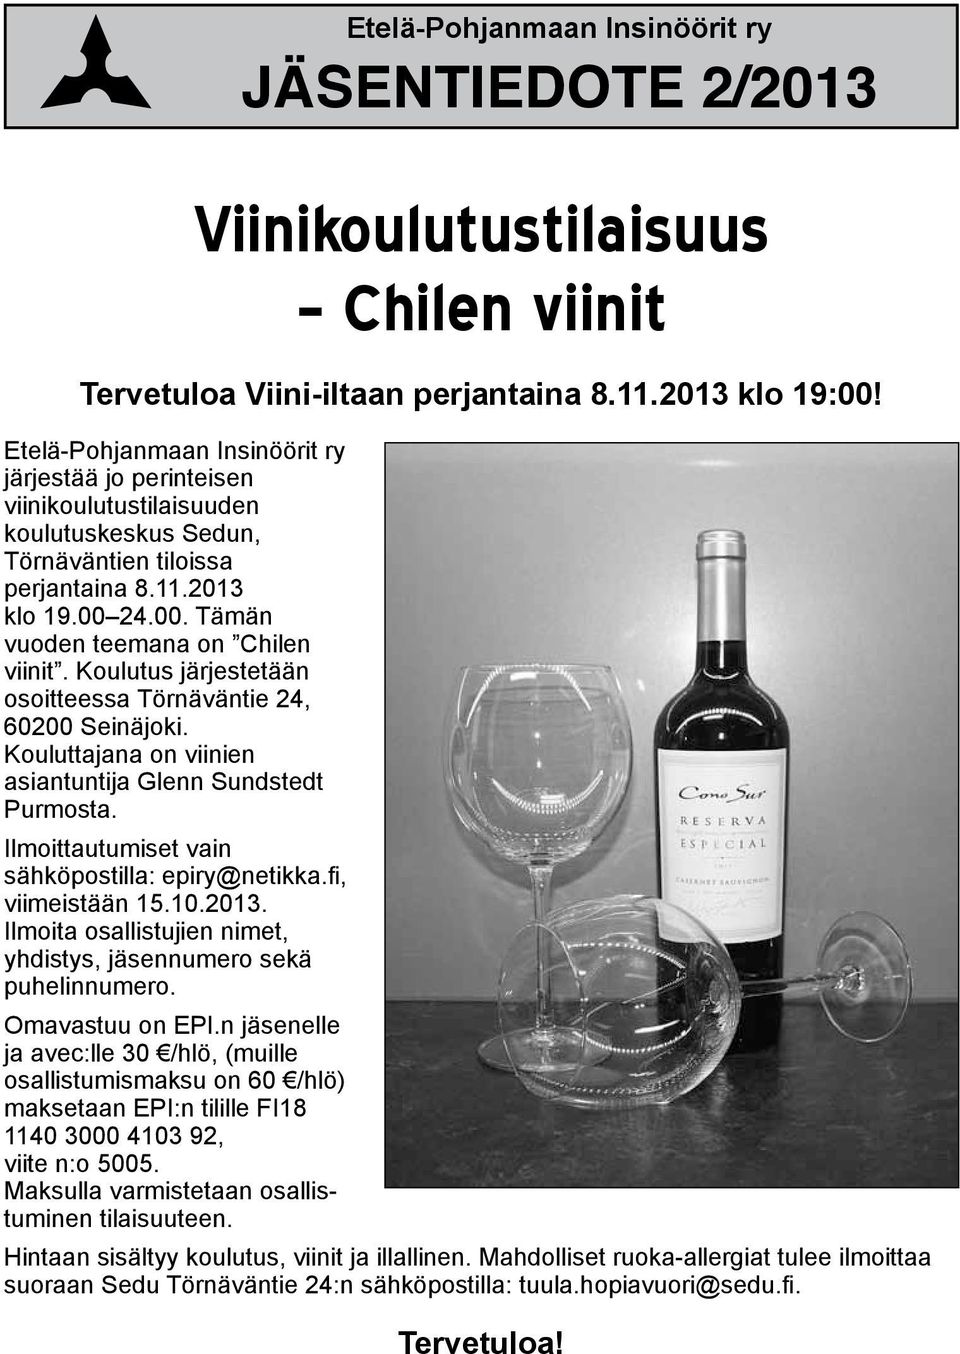 Koulutus järjestetään osoitteessa Törnäväntie 24, 60200 Seinäjoki. Kouluttajana on viinien asiantuntija Glenn Sundstedt Purmosta. Ilmoittautumiset vain sähköpostilla: epiry@netikka.fi, viimeistään 15.